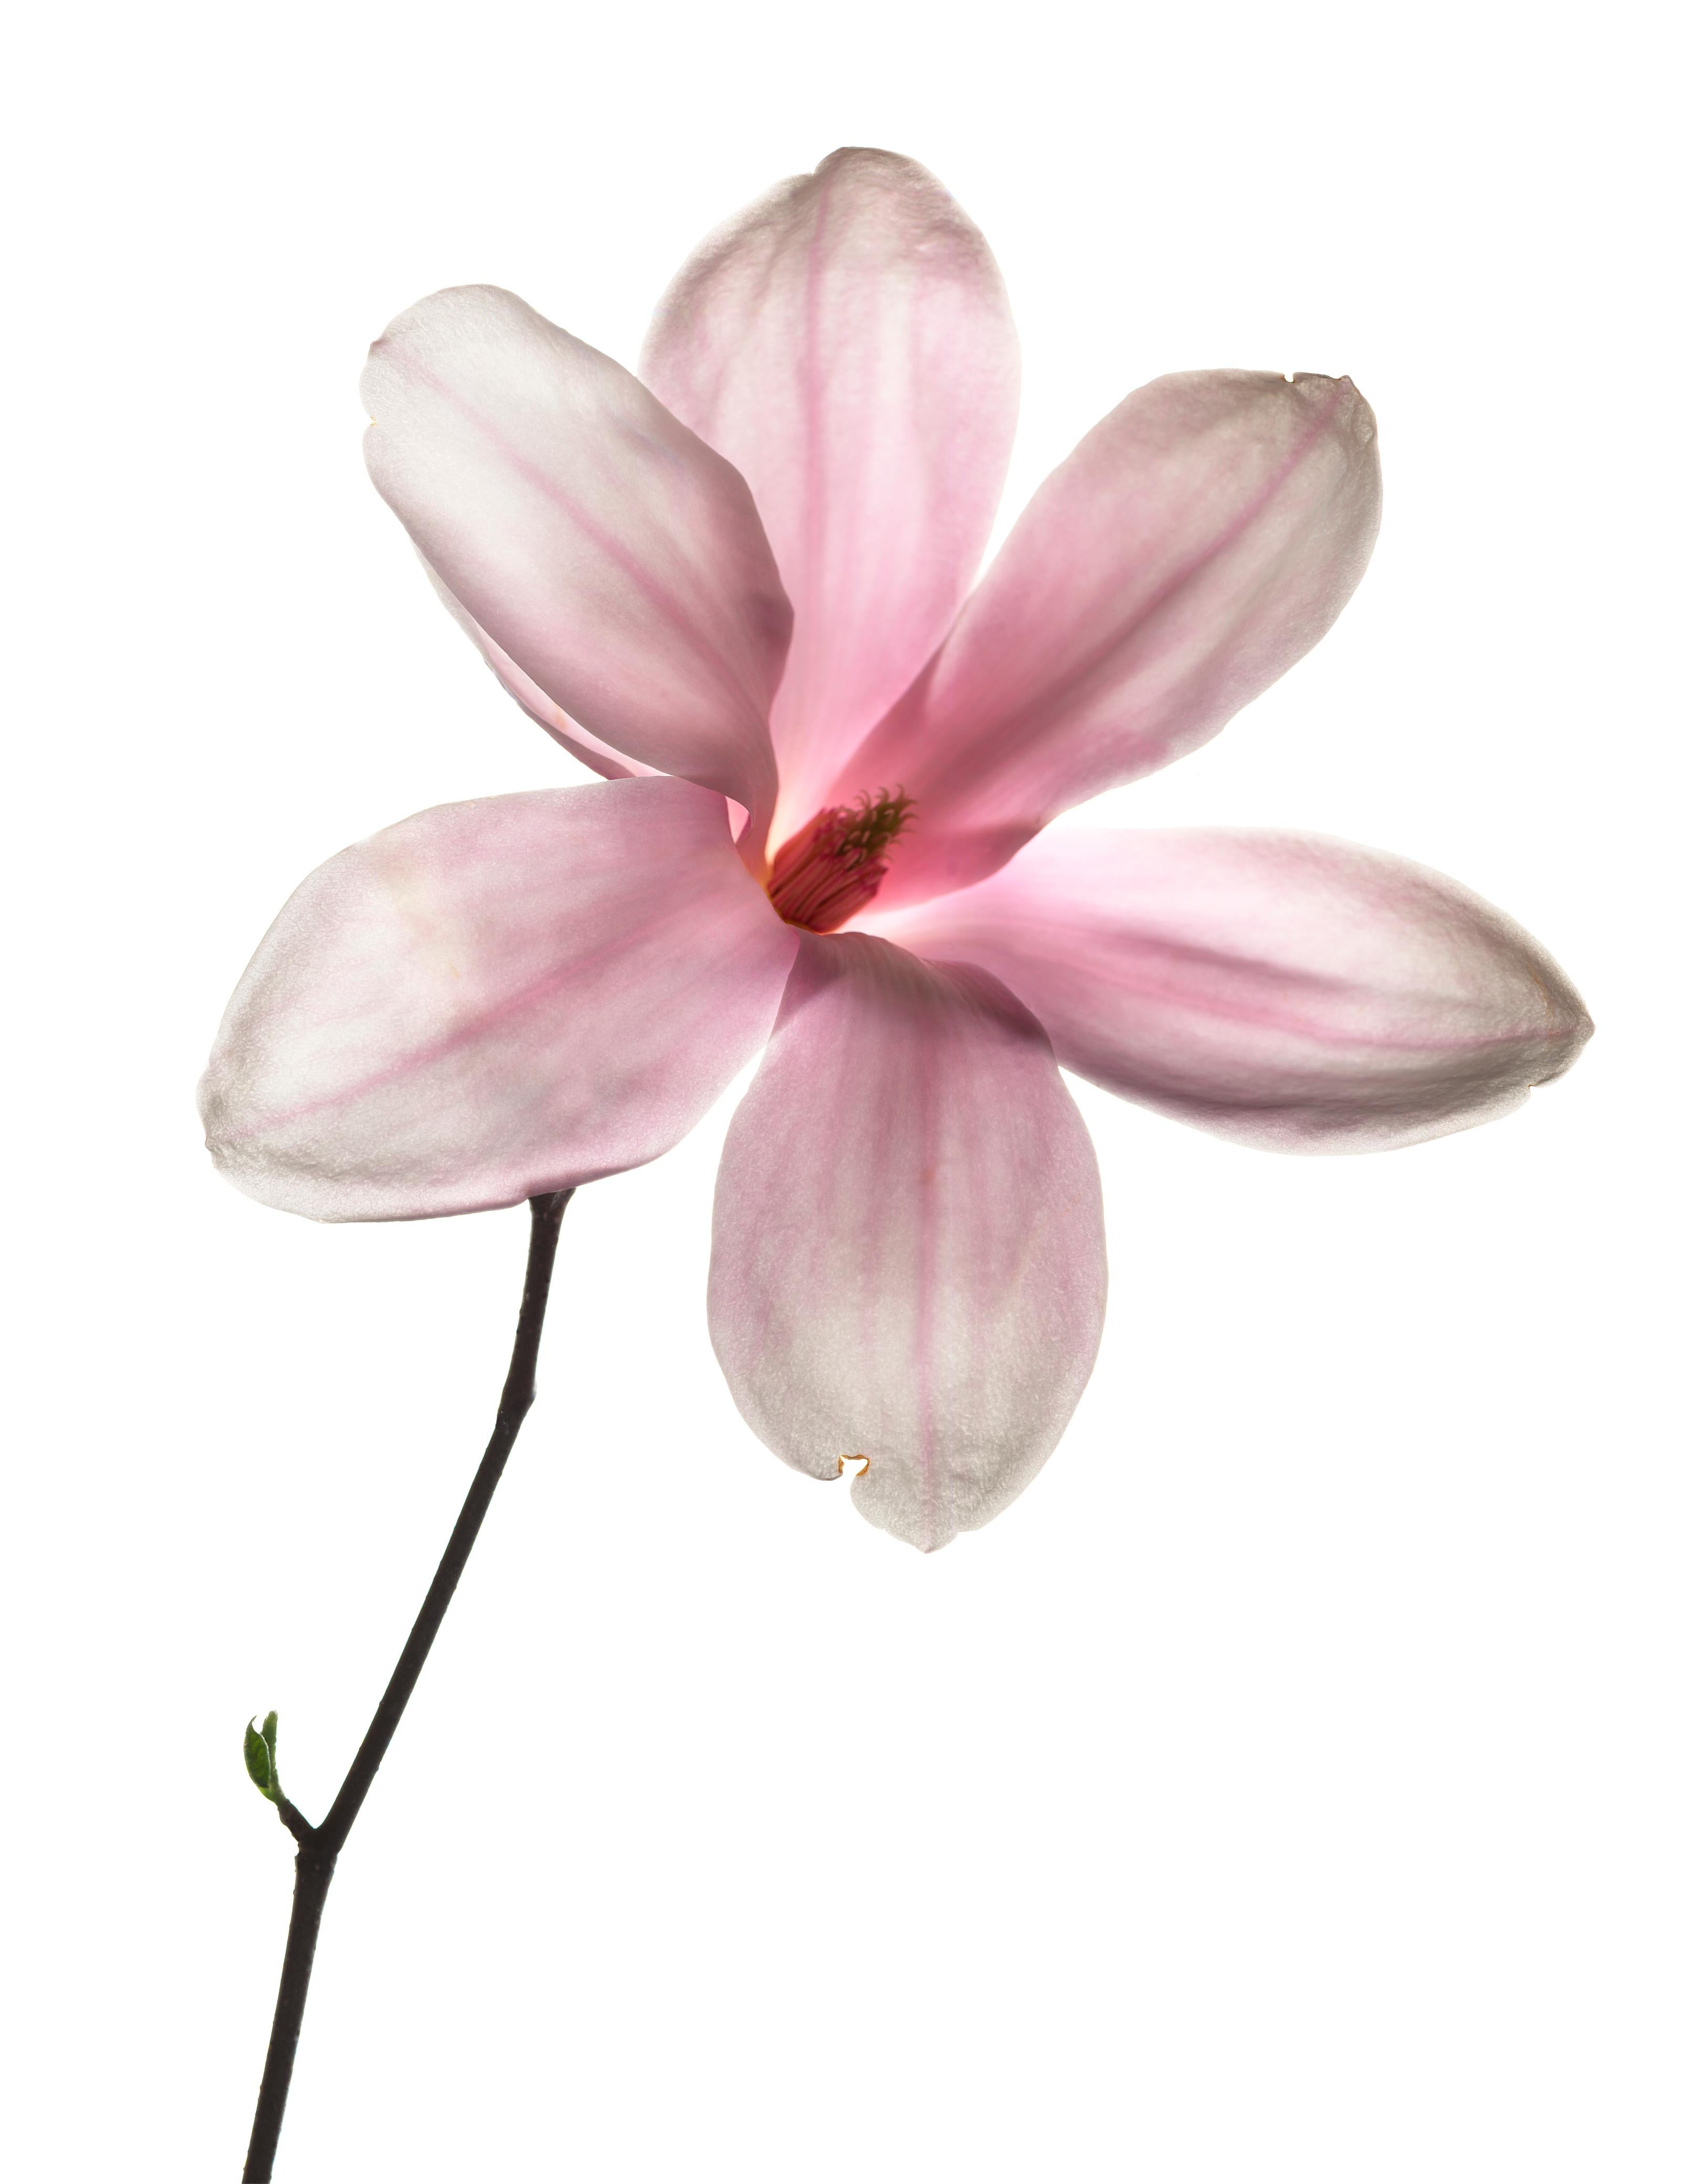 Chad Kleitsch Still-Life Photograph - Untitled Flower # 113 (48" x 48")